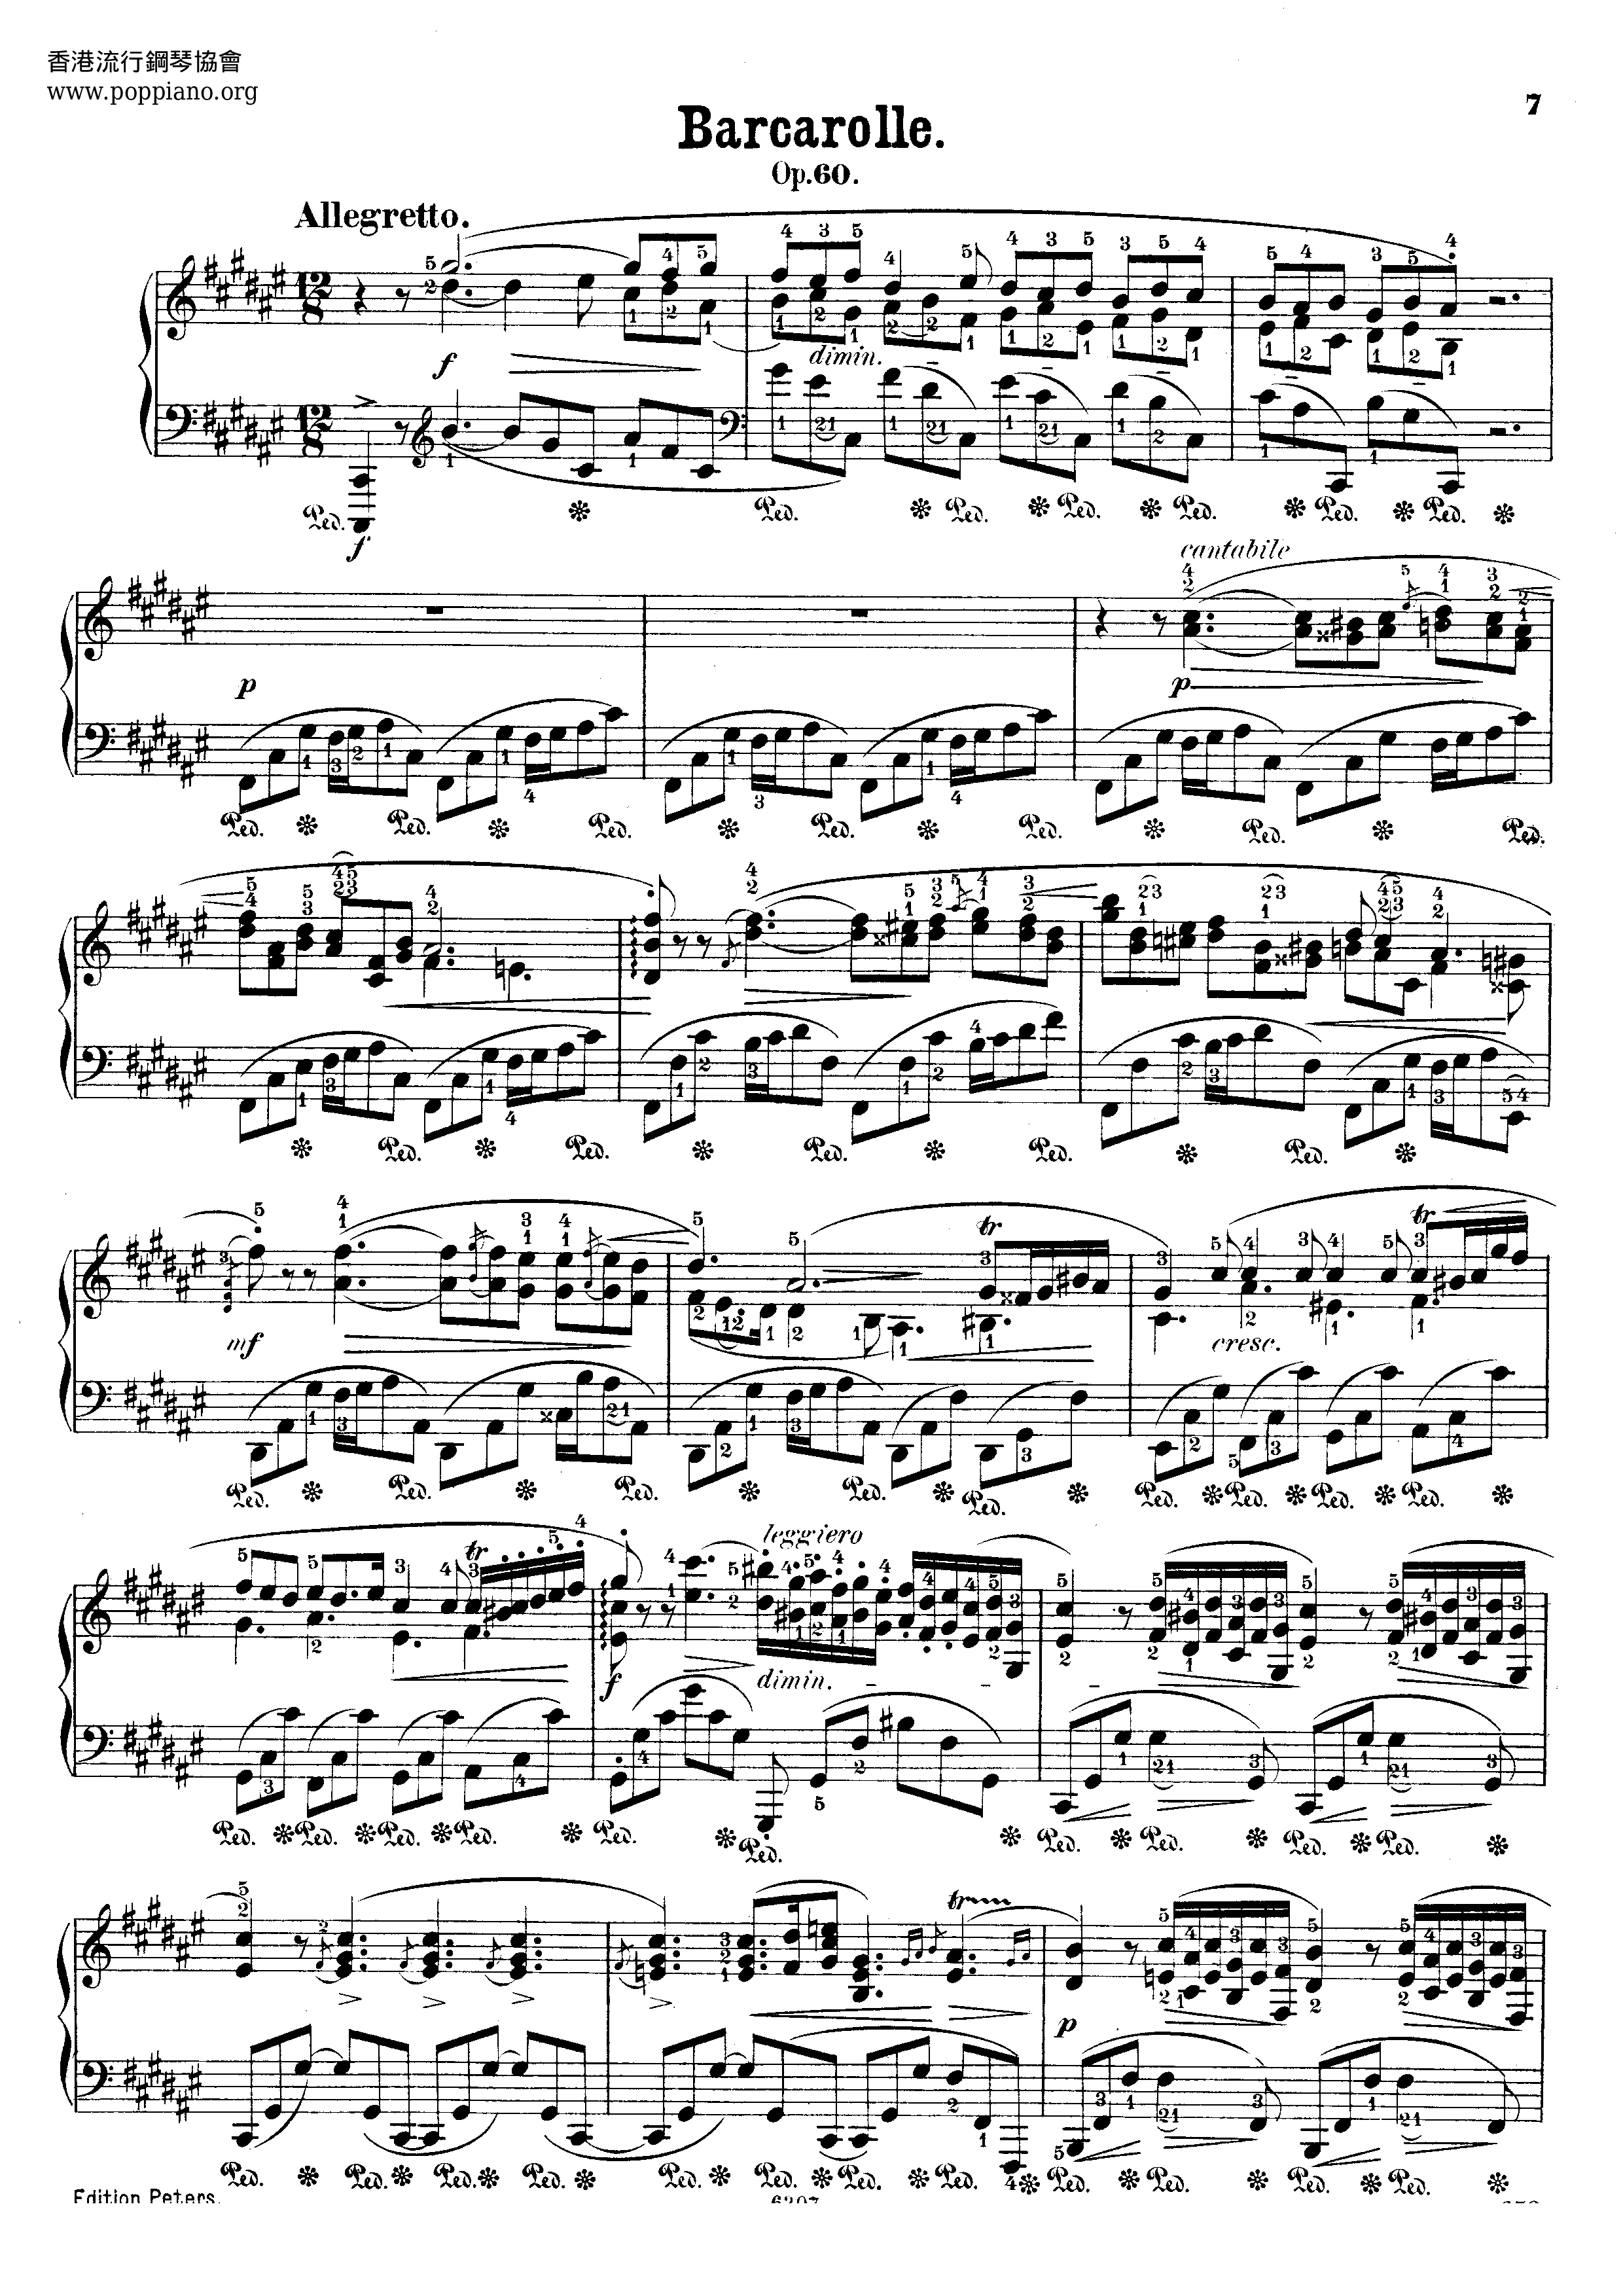 Barcarolle in F-Sharp Major, Op. 60 Score